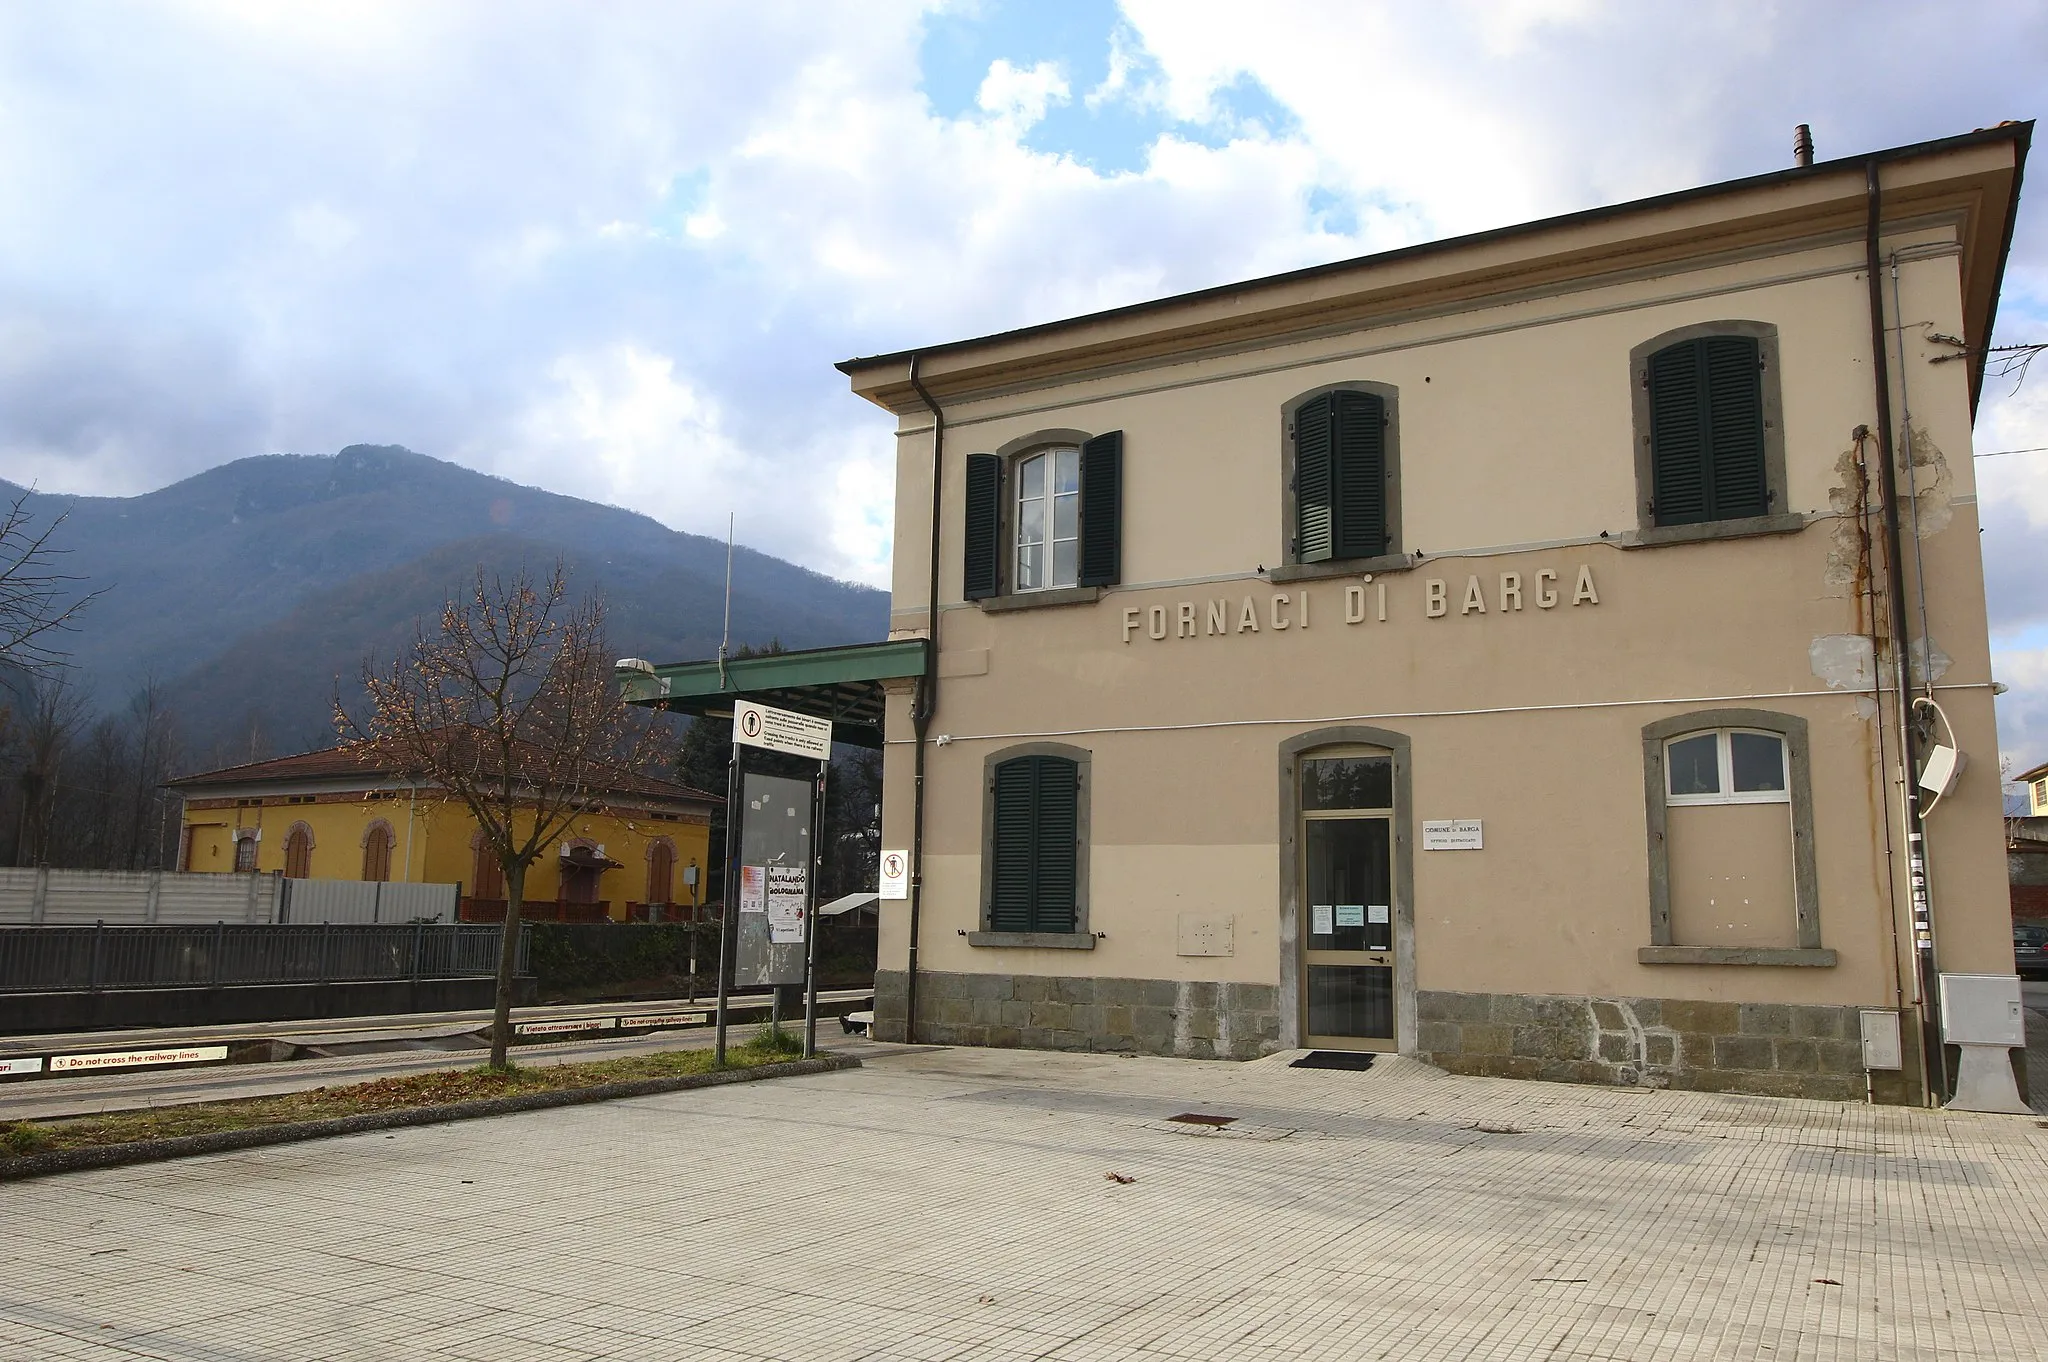 Photo showing: Fornaci di Barga train station, Fornaci di Barga, hamlet of Barga, Garfagnana, Province of Lucca, Tuscany, Italy